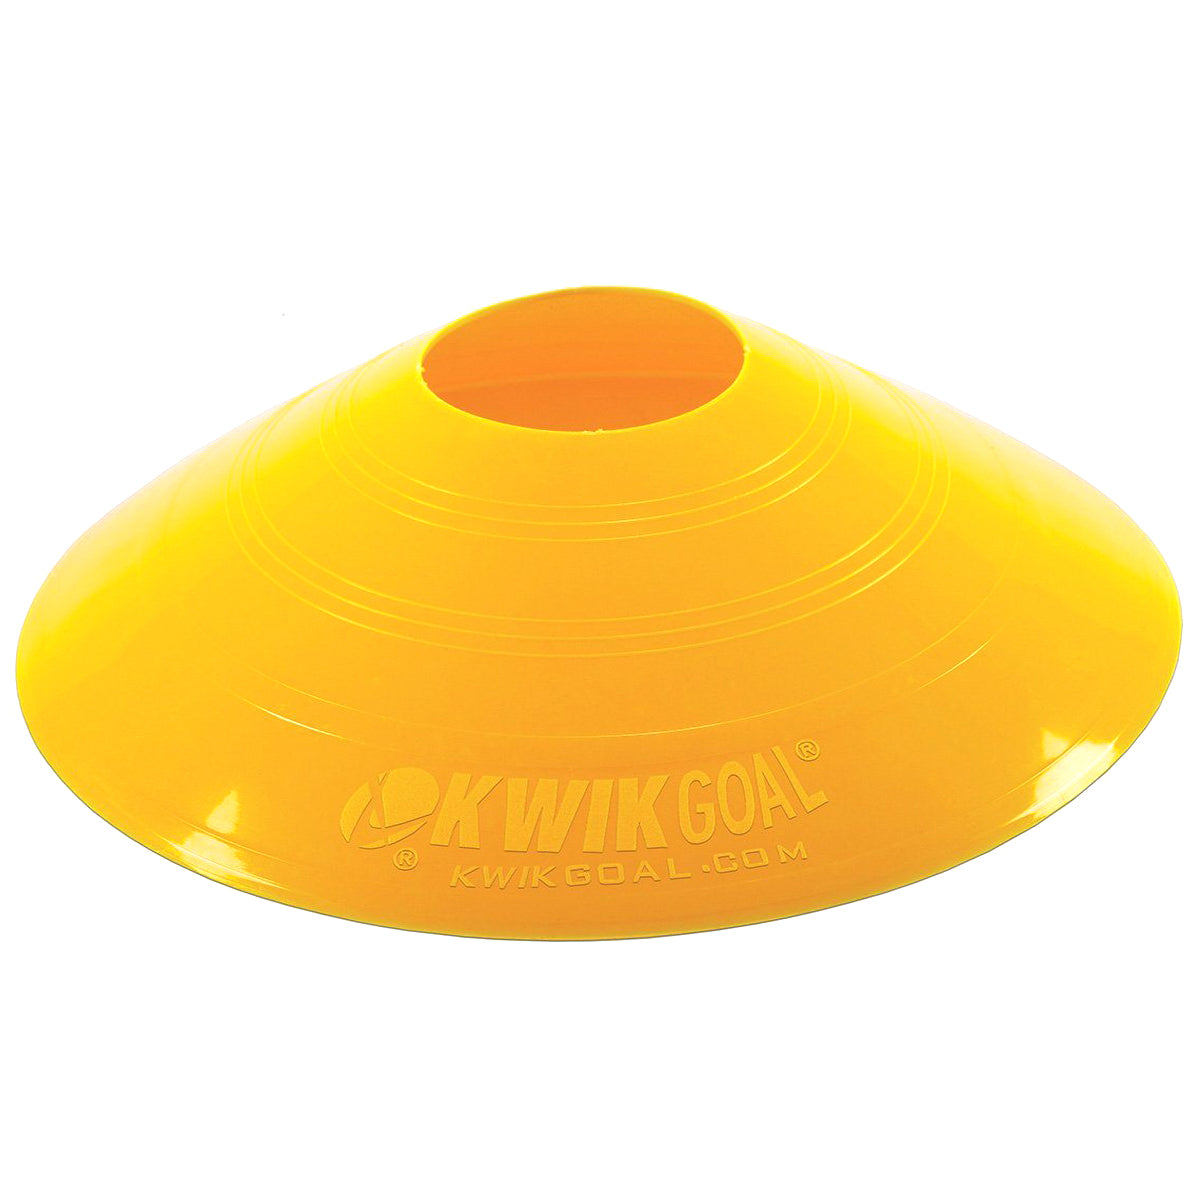 Kwikgoal Small Disc Cones Soccer Coaching Equipment | 6A10 Field equipment Kwikgoal Yellow 